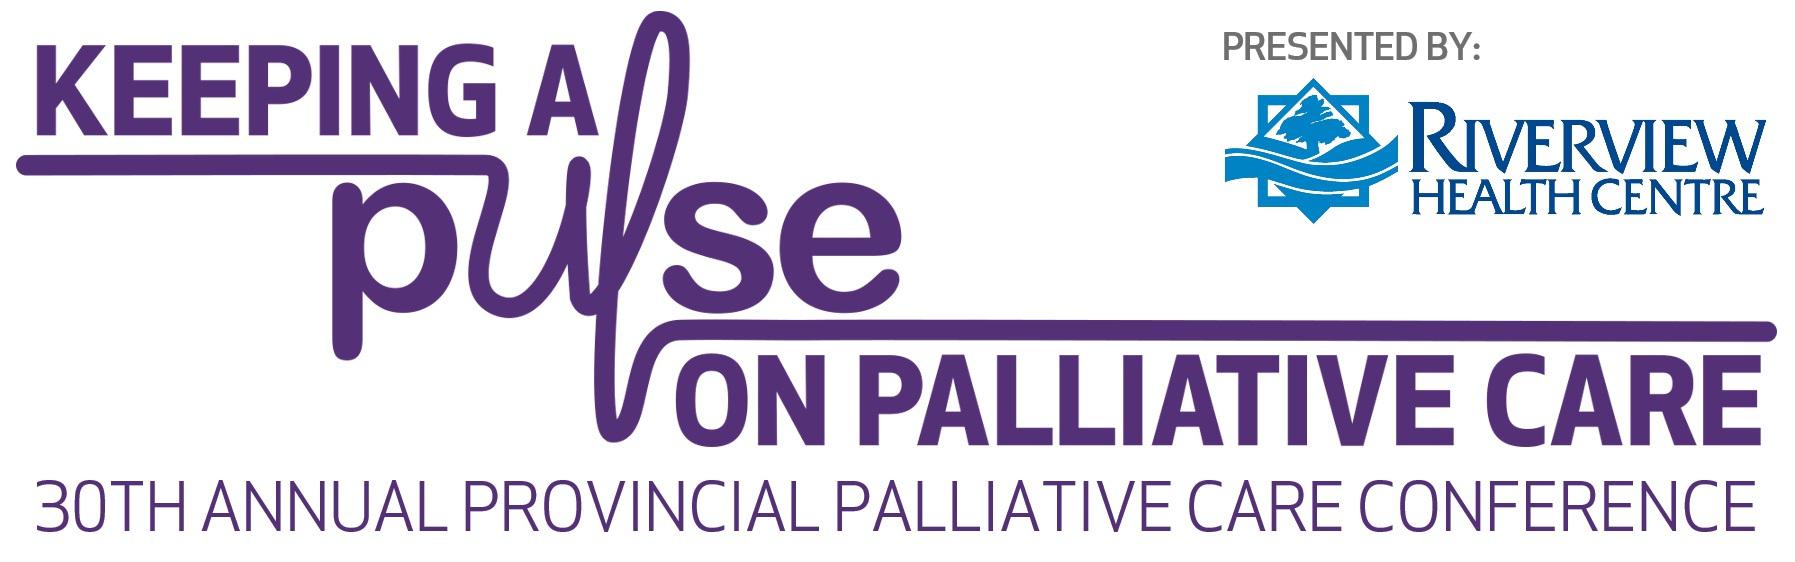 30th Annual Provincial Palliative Care Conference